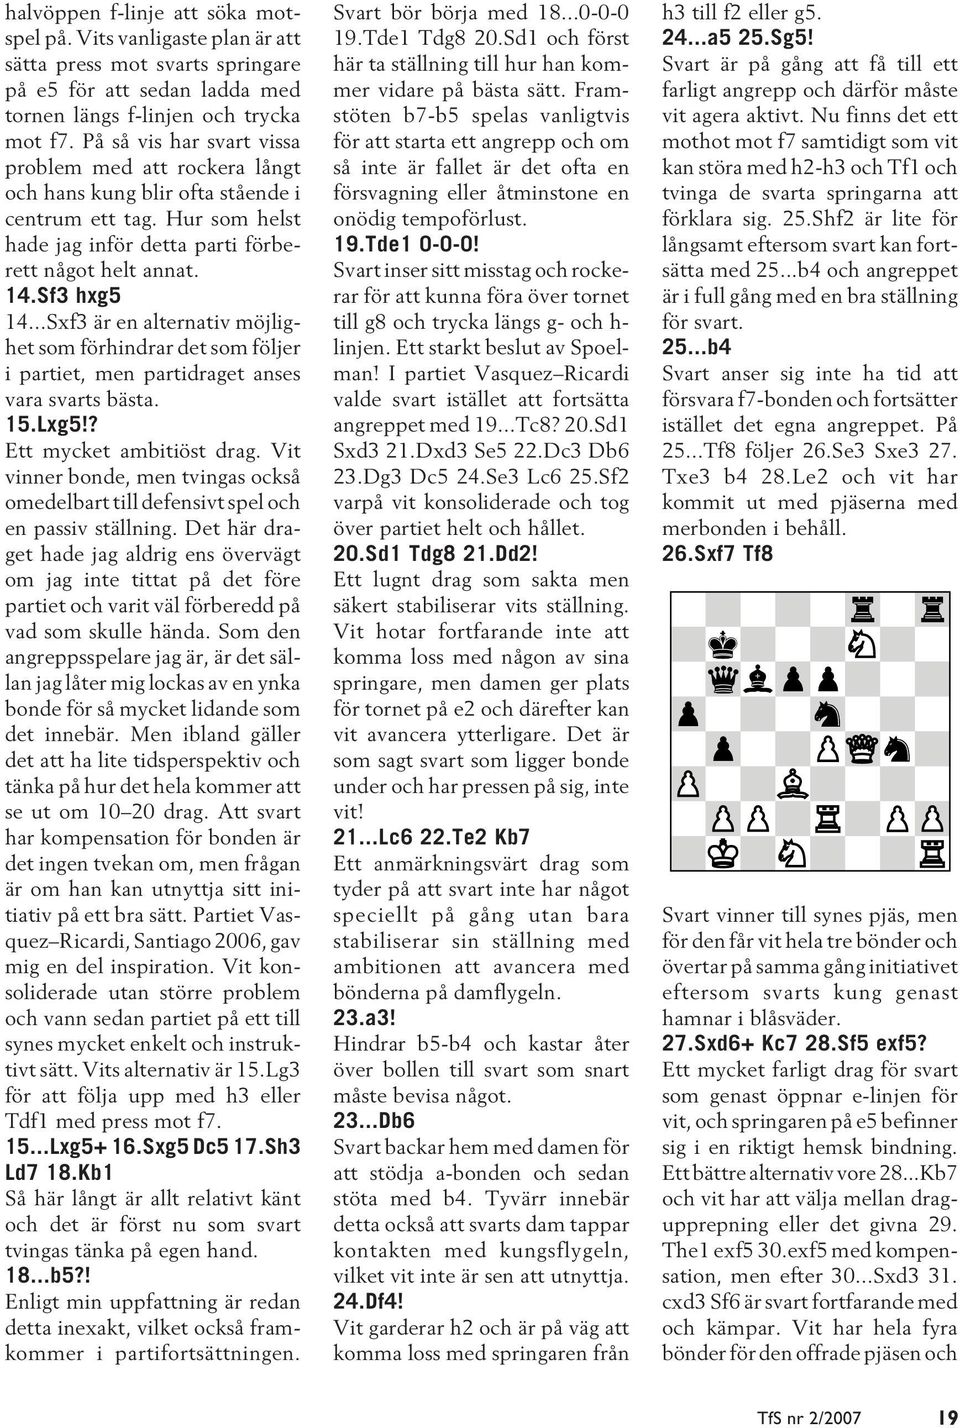 ..Sxf3 är en alternativ möjlighet som förhindrar det som följer i partiet, men partidraget anses vara svarts bästa. 15.Lxg5!? Ett mycket ambitiöst drag.